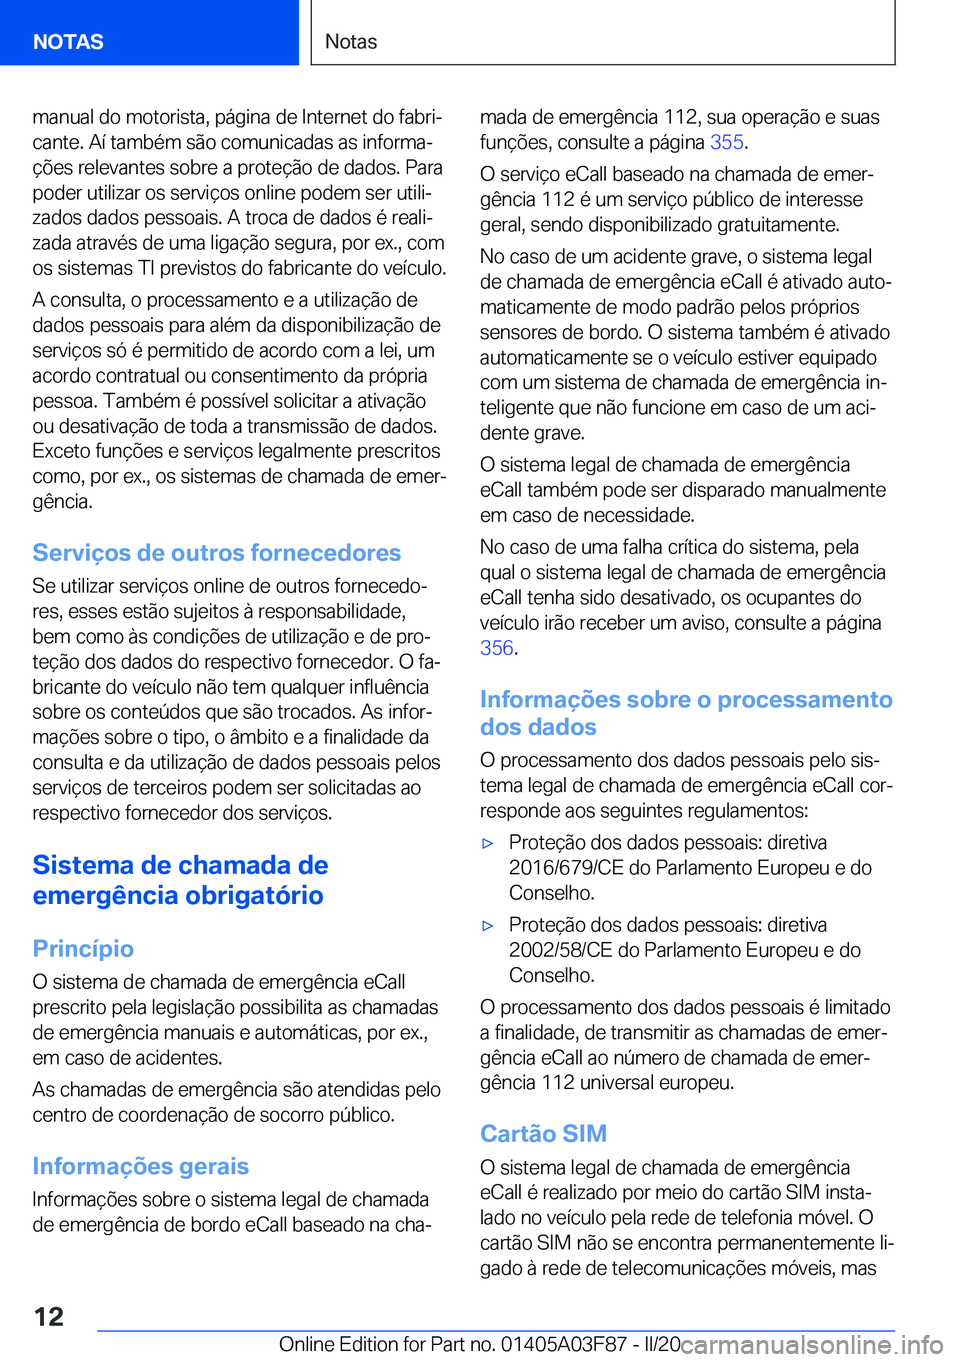 BMW 3 SERIES 2020  Manual do condutor (in Portuguese) �m�a�n�u�a�l��d�o��m�o�t�o�r�i�s�t�a�,��p�á�g�i�n�a��d�e��I�n�t�e�r�n�e�t��d�o��f�a�b�r�iª�c�a�n�t�e�.��A�